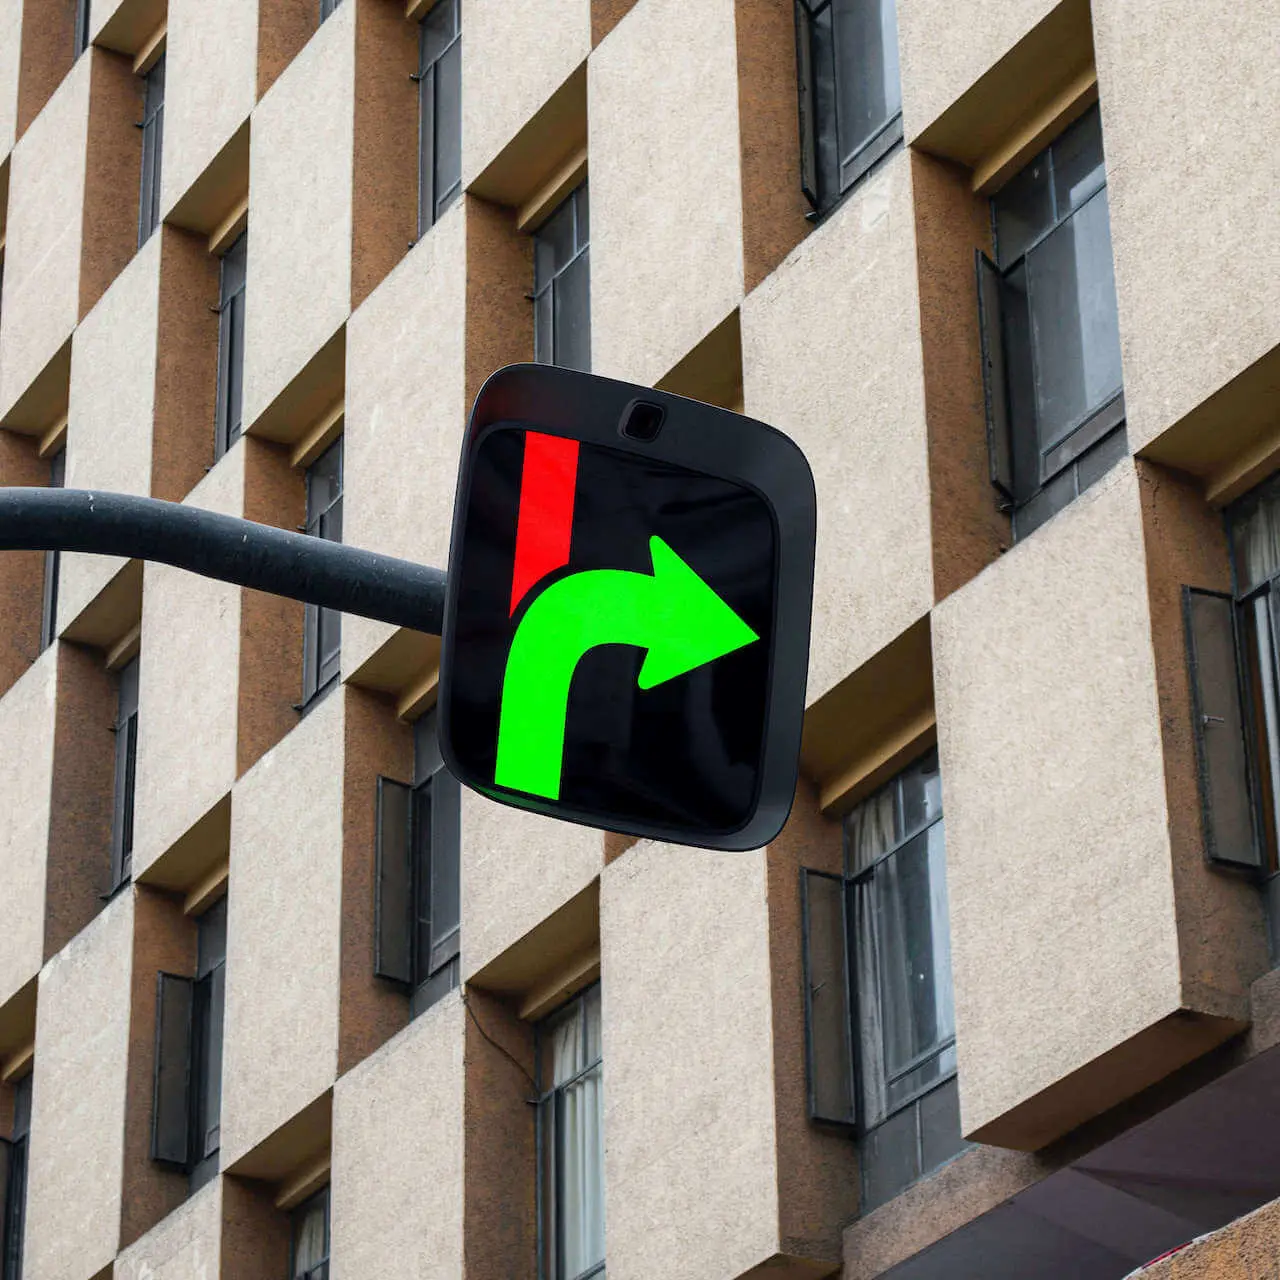 Traffic Light Design - turn right